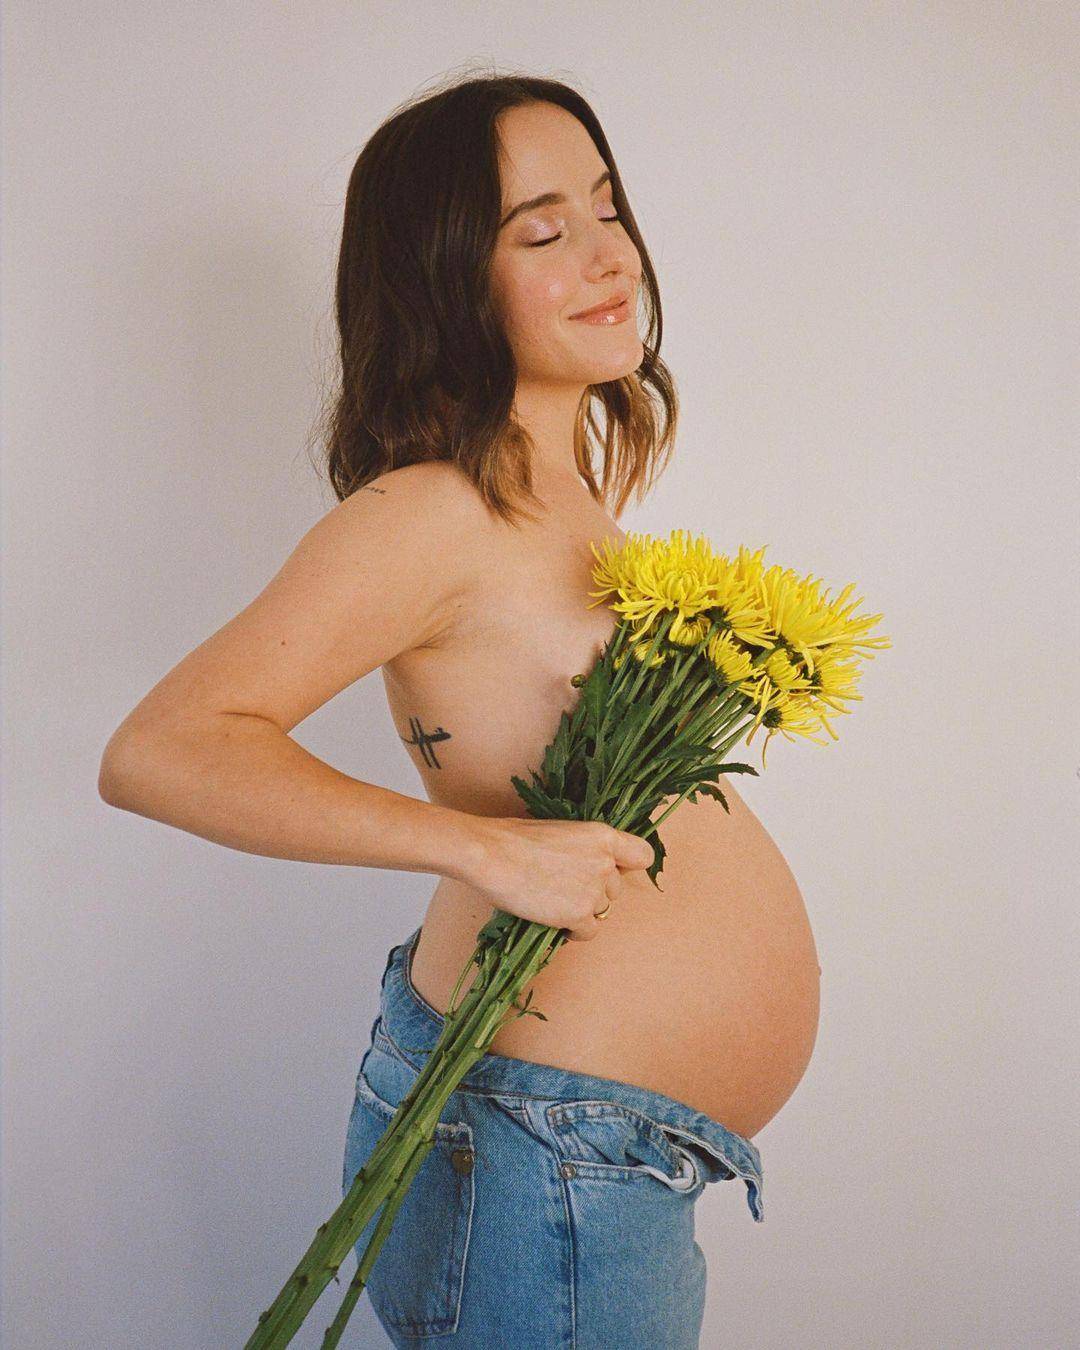 Evaluna publica nuevas fotos de su embarazo: ¿niño o niña?